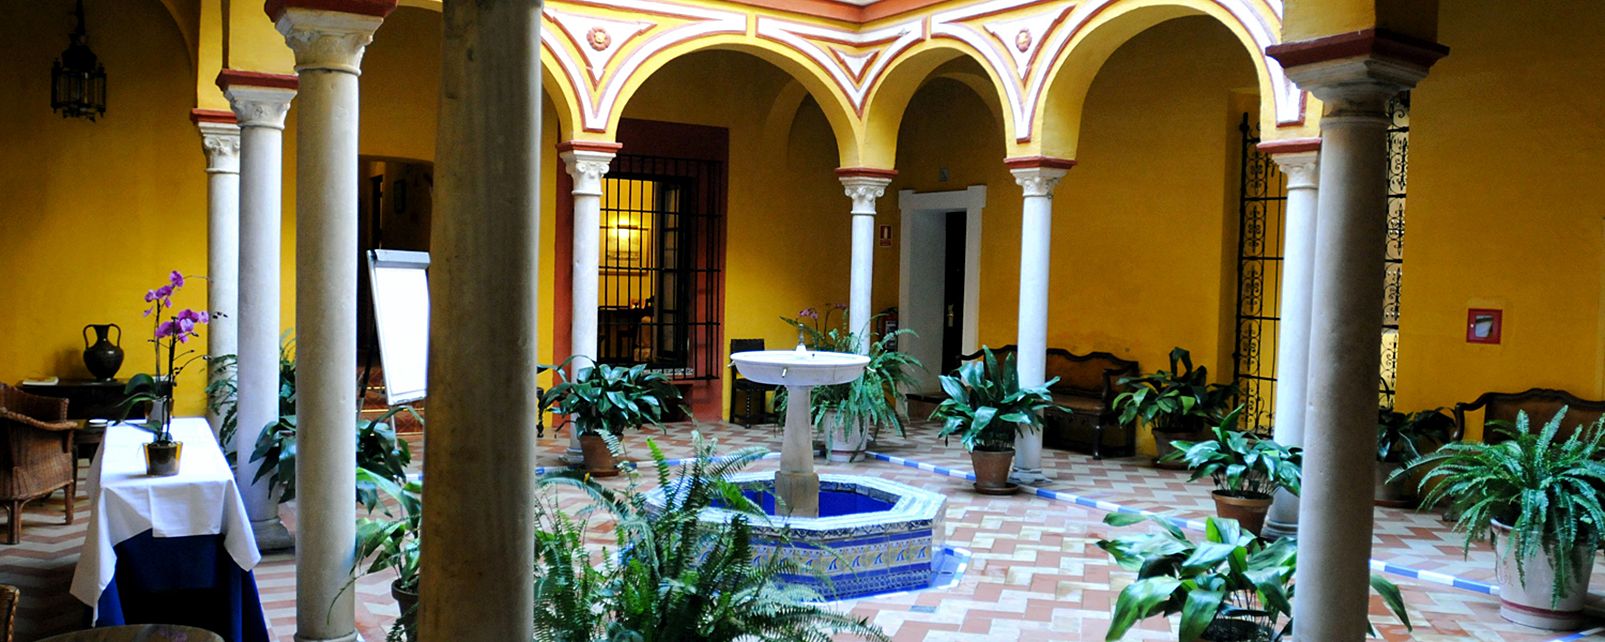 Hotel Las Casas De La Juderia